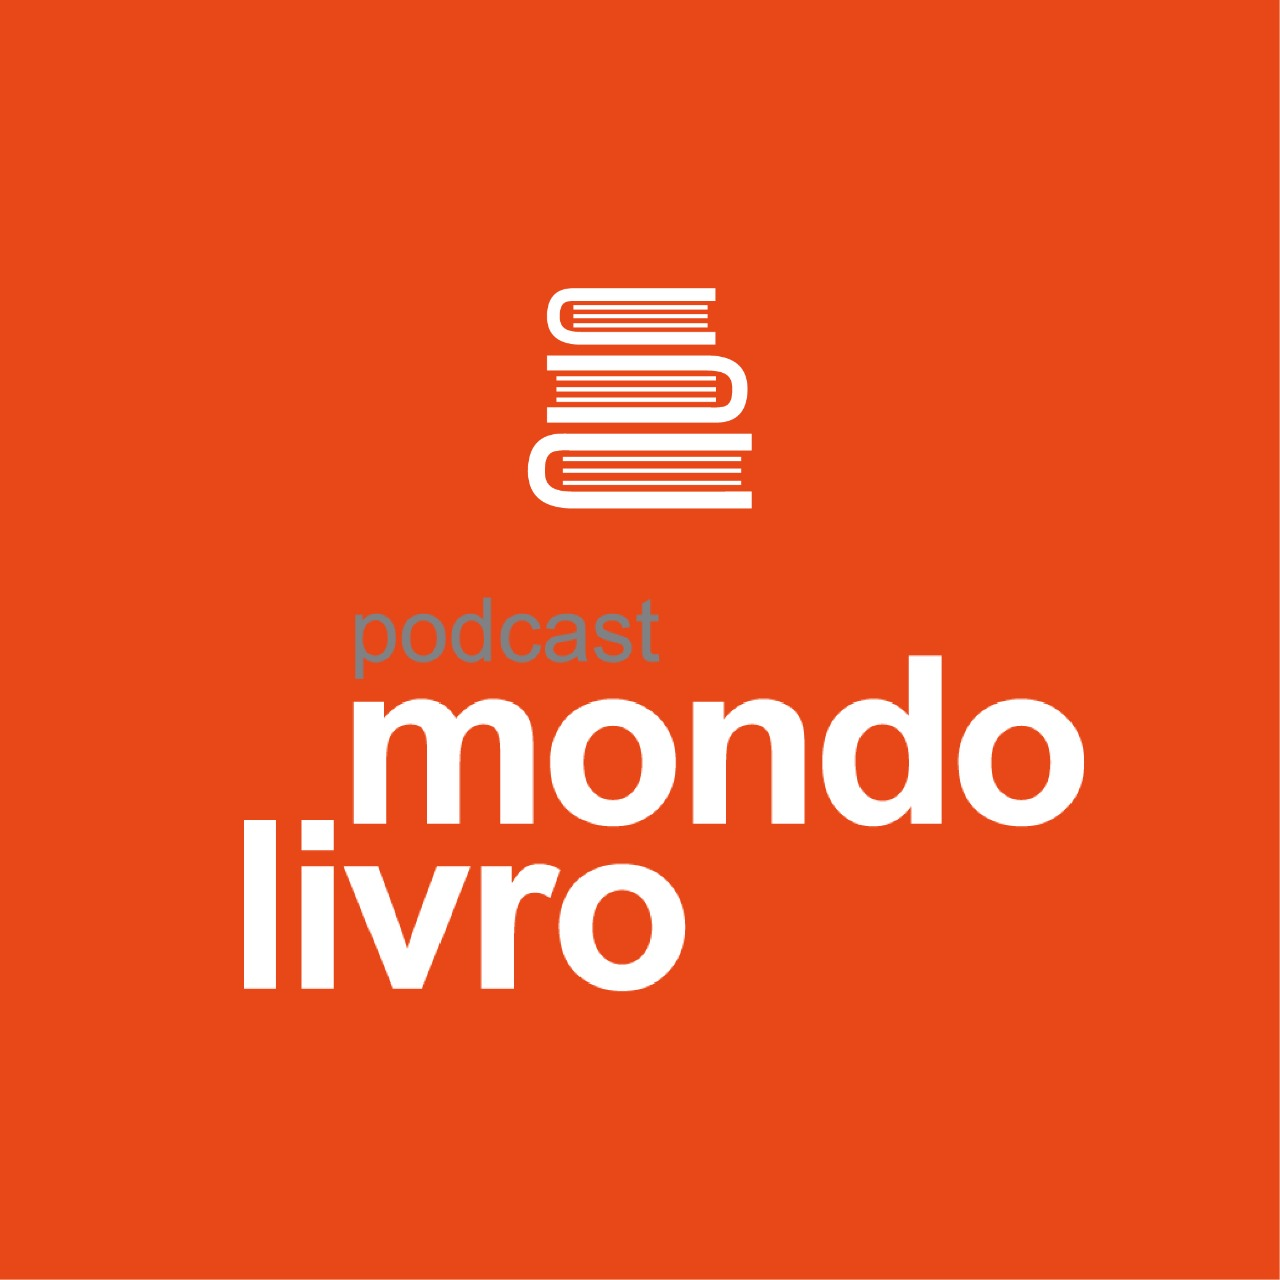 Mondolivro Podcast - Carpinejar fala sobre seu livro "Depois é nunca"